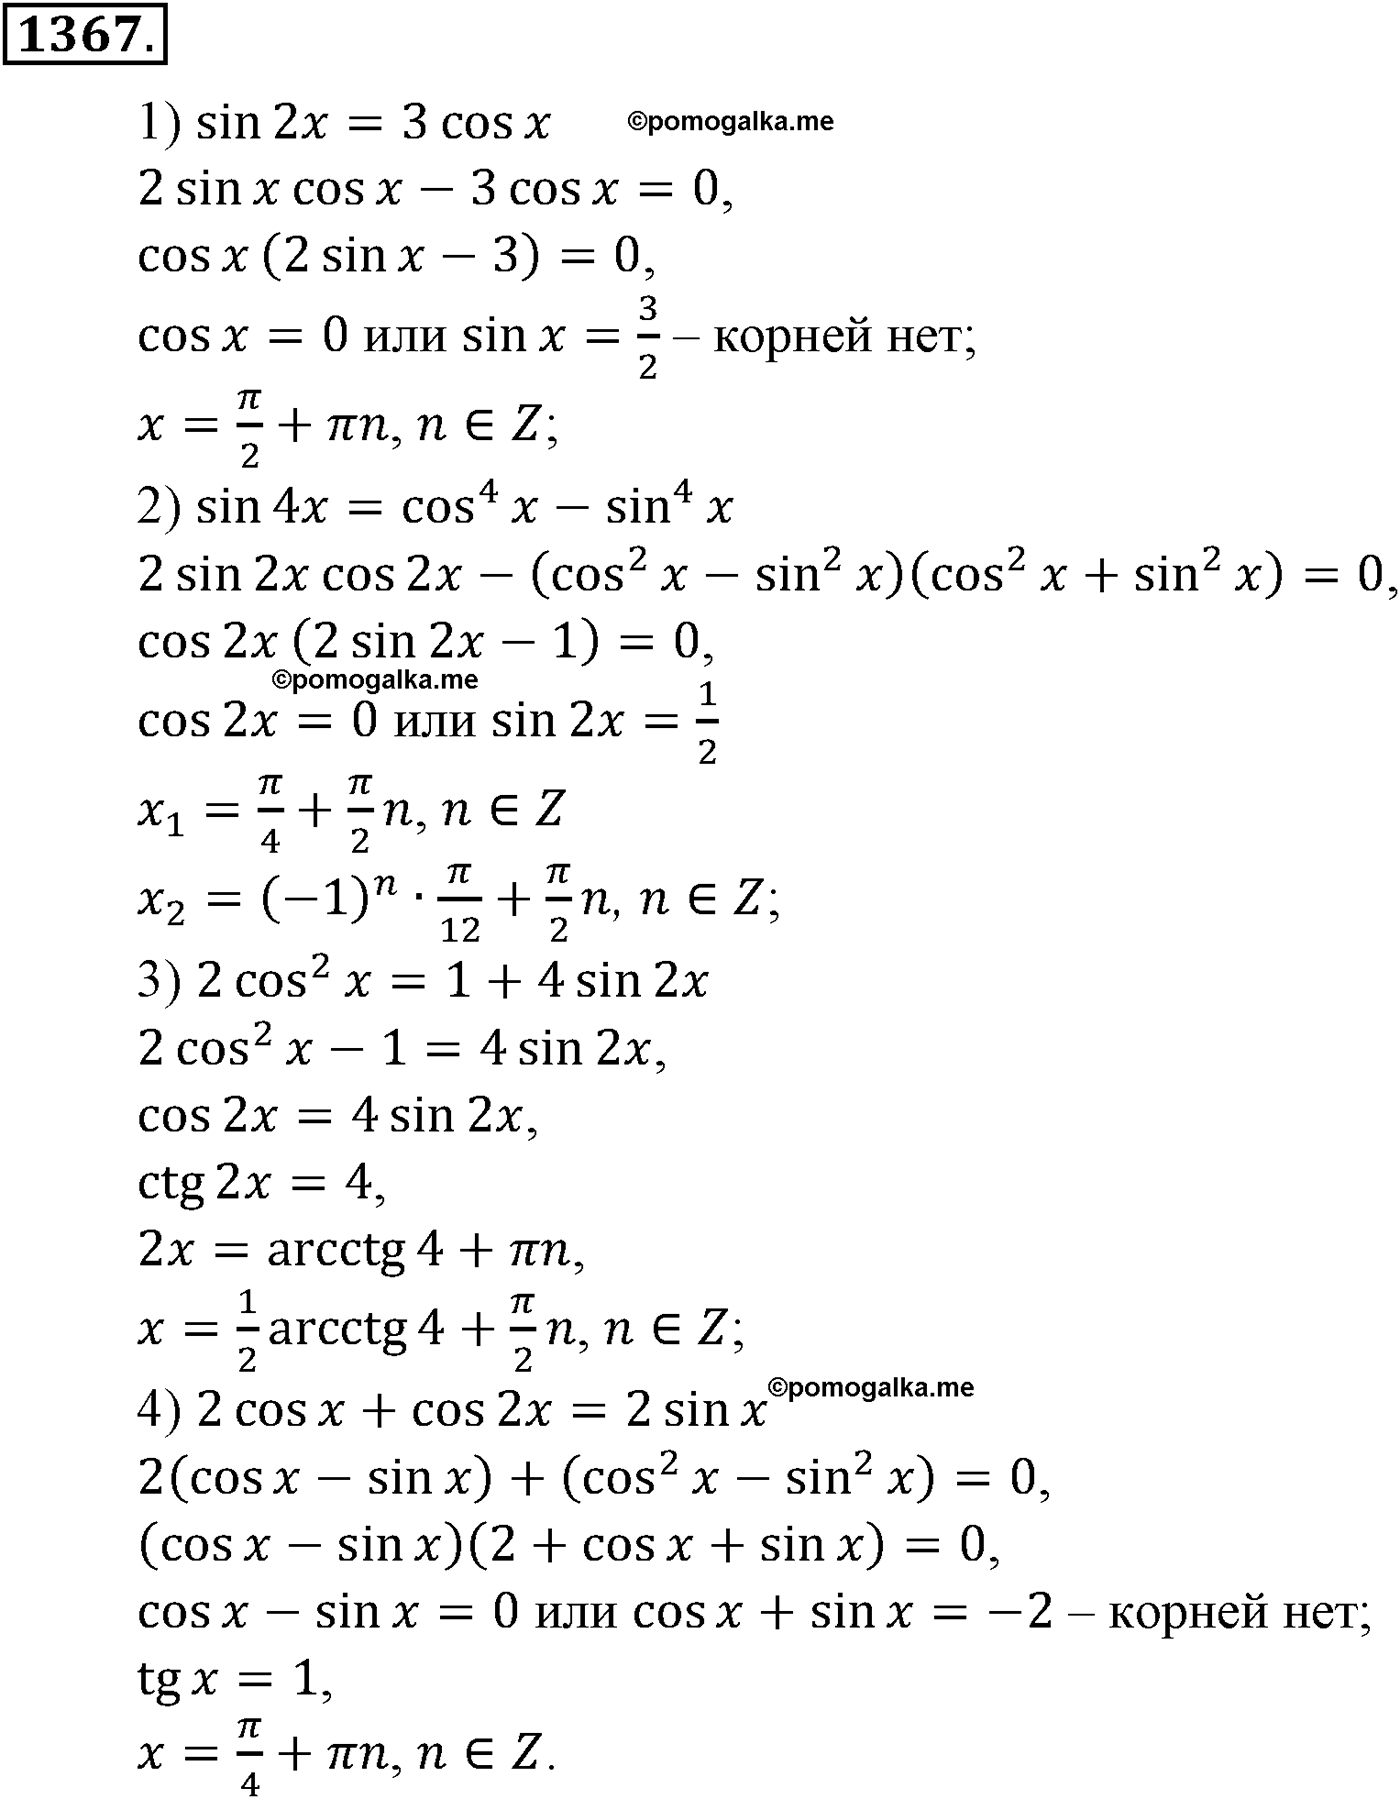 разбор задачи №1367 по алгебре за 10-11 класс из учебника Алимова, Колягина